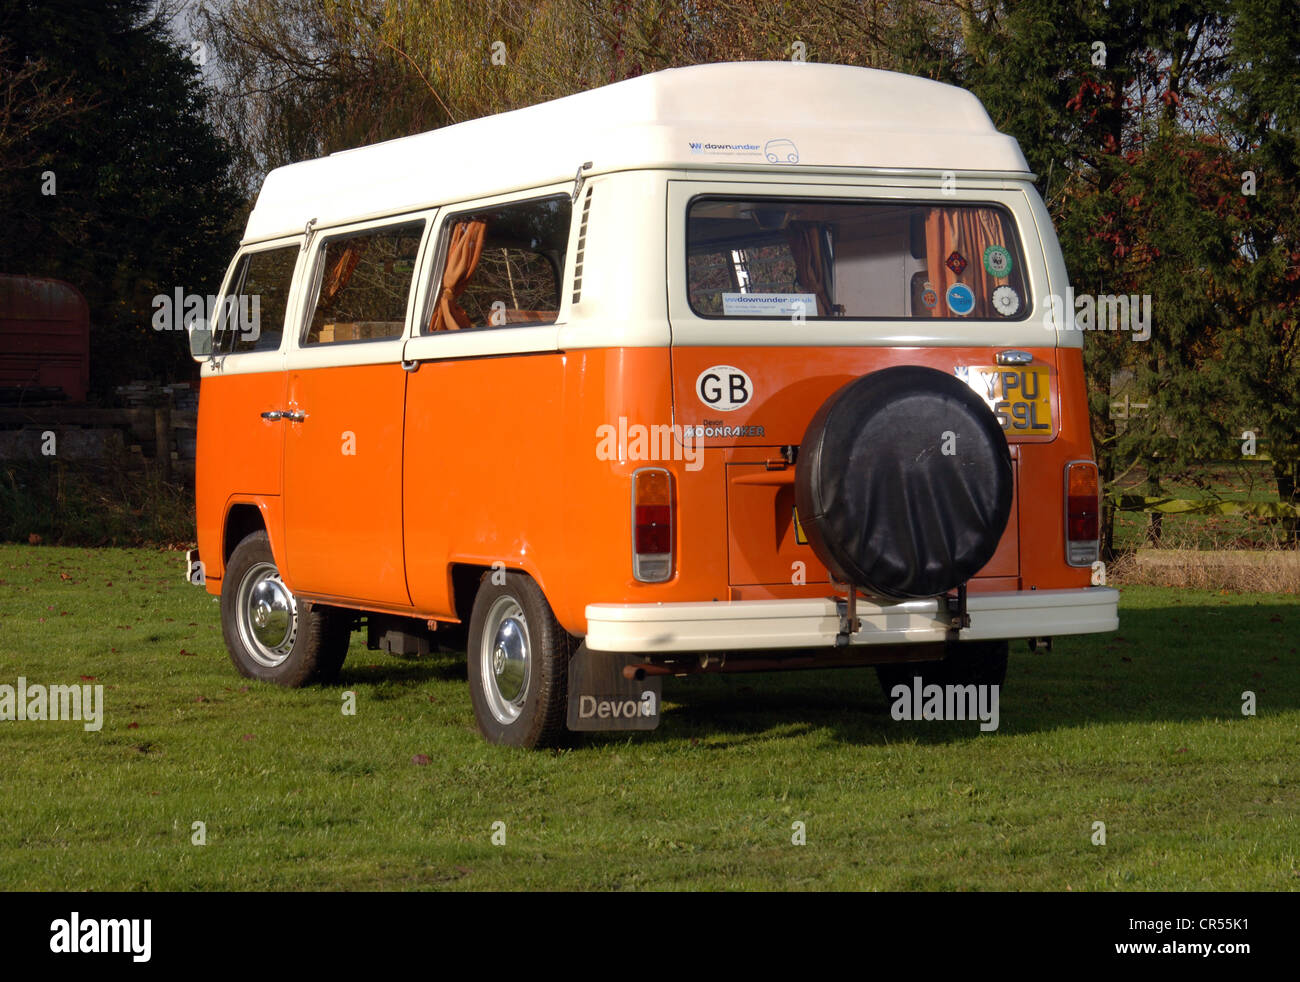 Bay WIndow VW Volkswagen camper van, micro bus Stock Photo